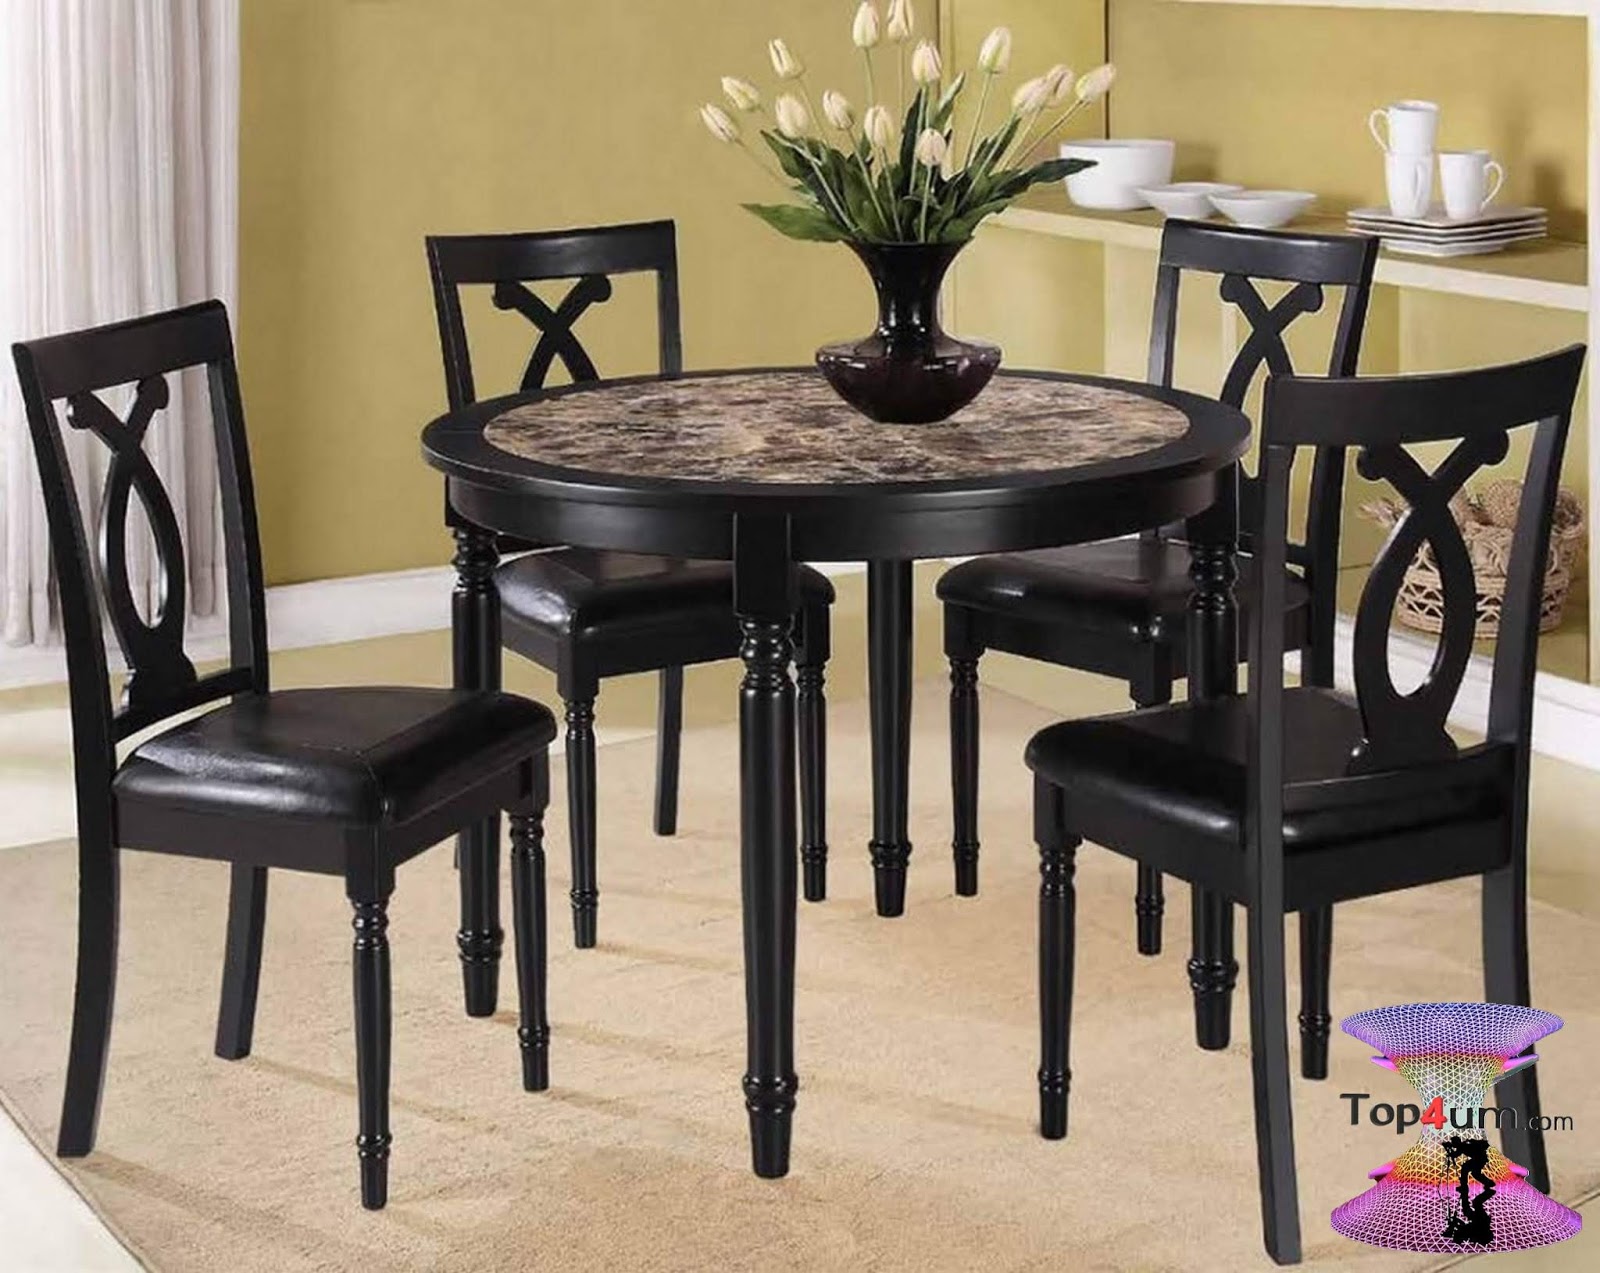 Продажа столов и стульев. Стол Dining Table черный. Стол и стулья для маленькой кухни. Стол кухонный круглый. Красивые столы и стулья для кухни.